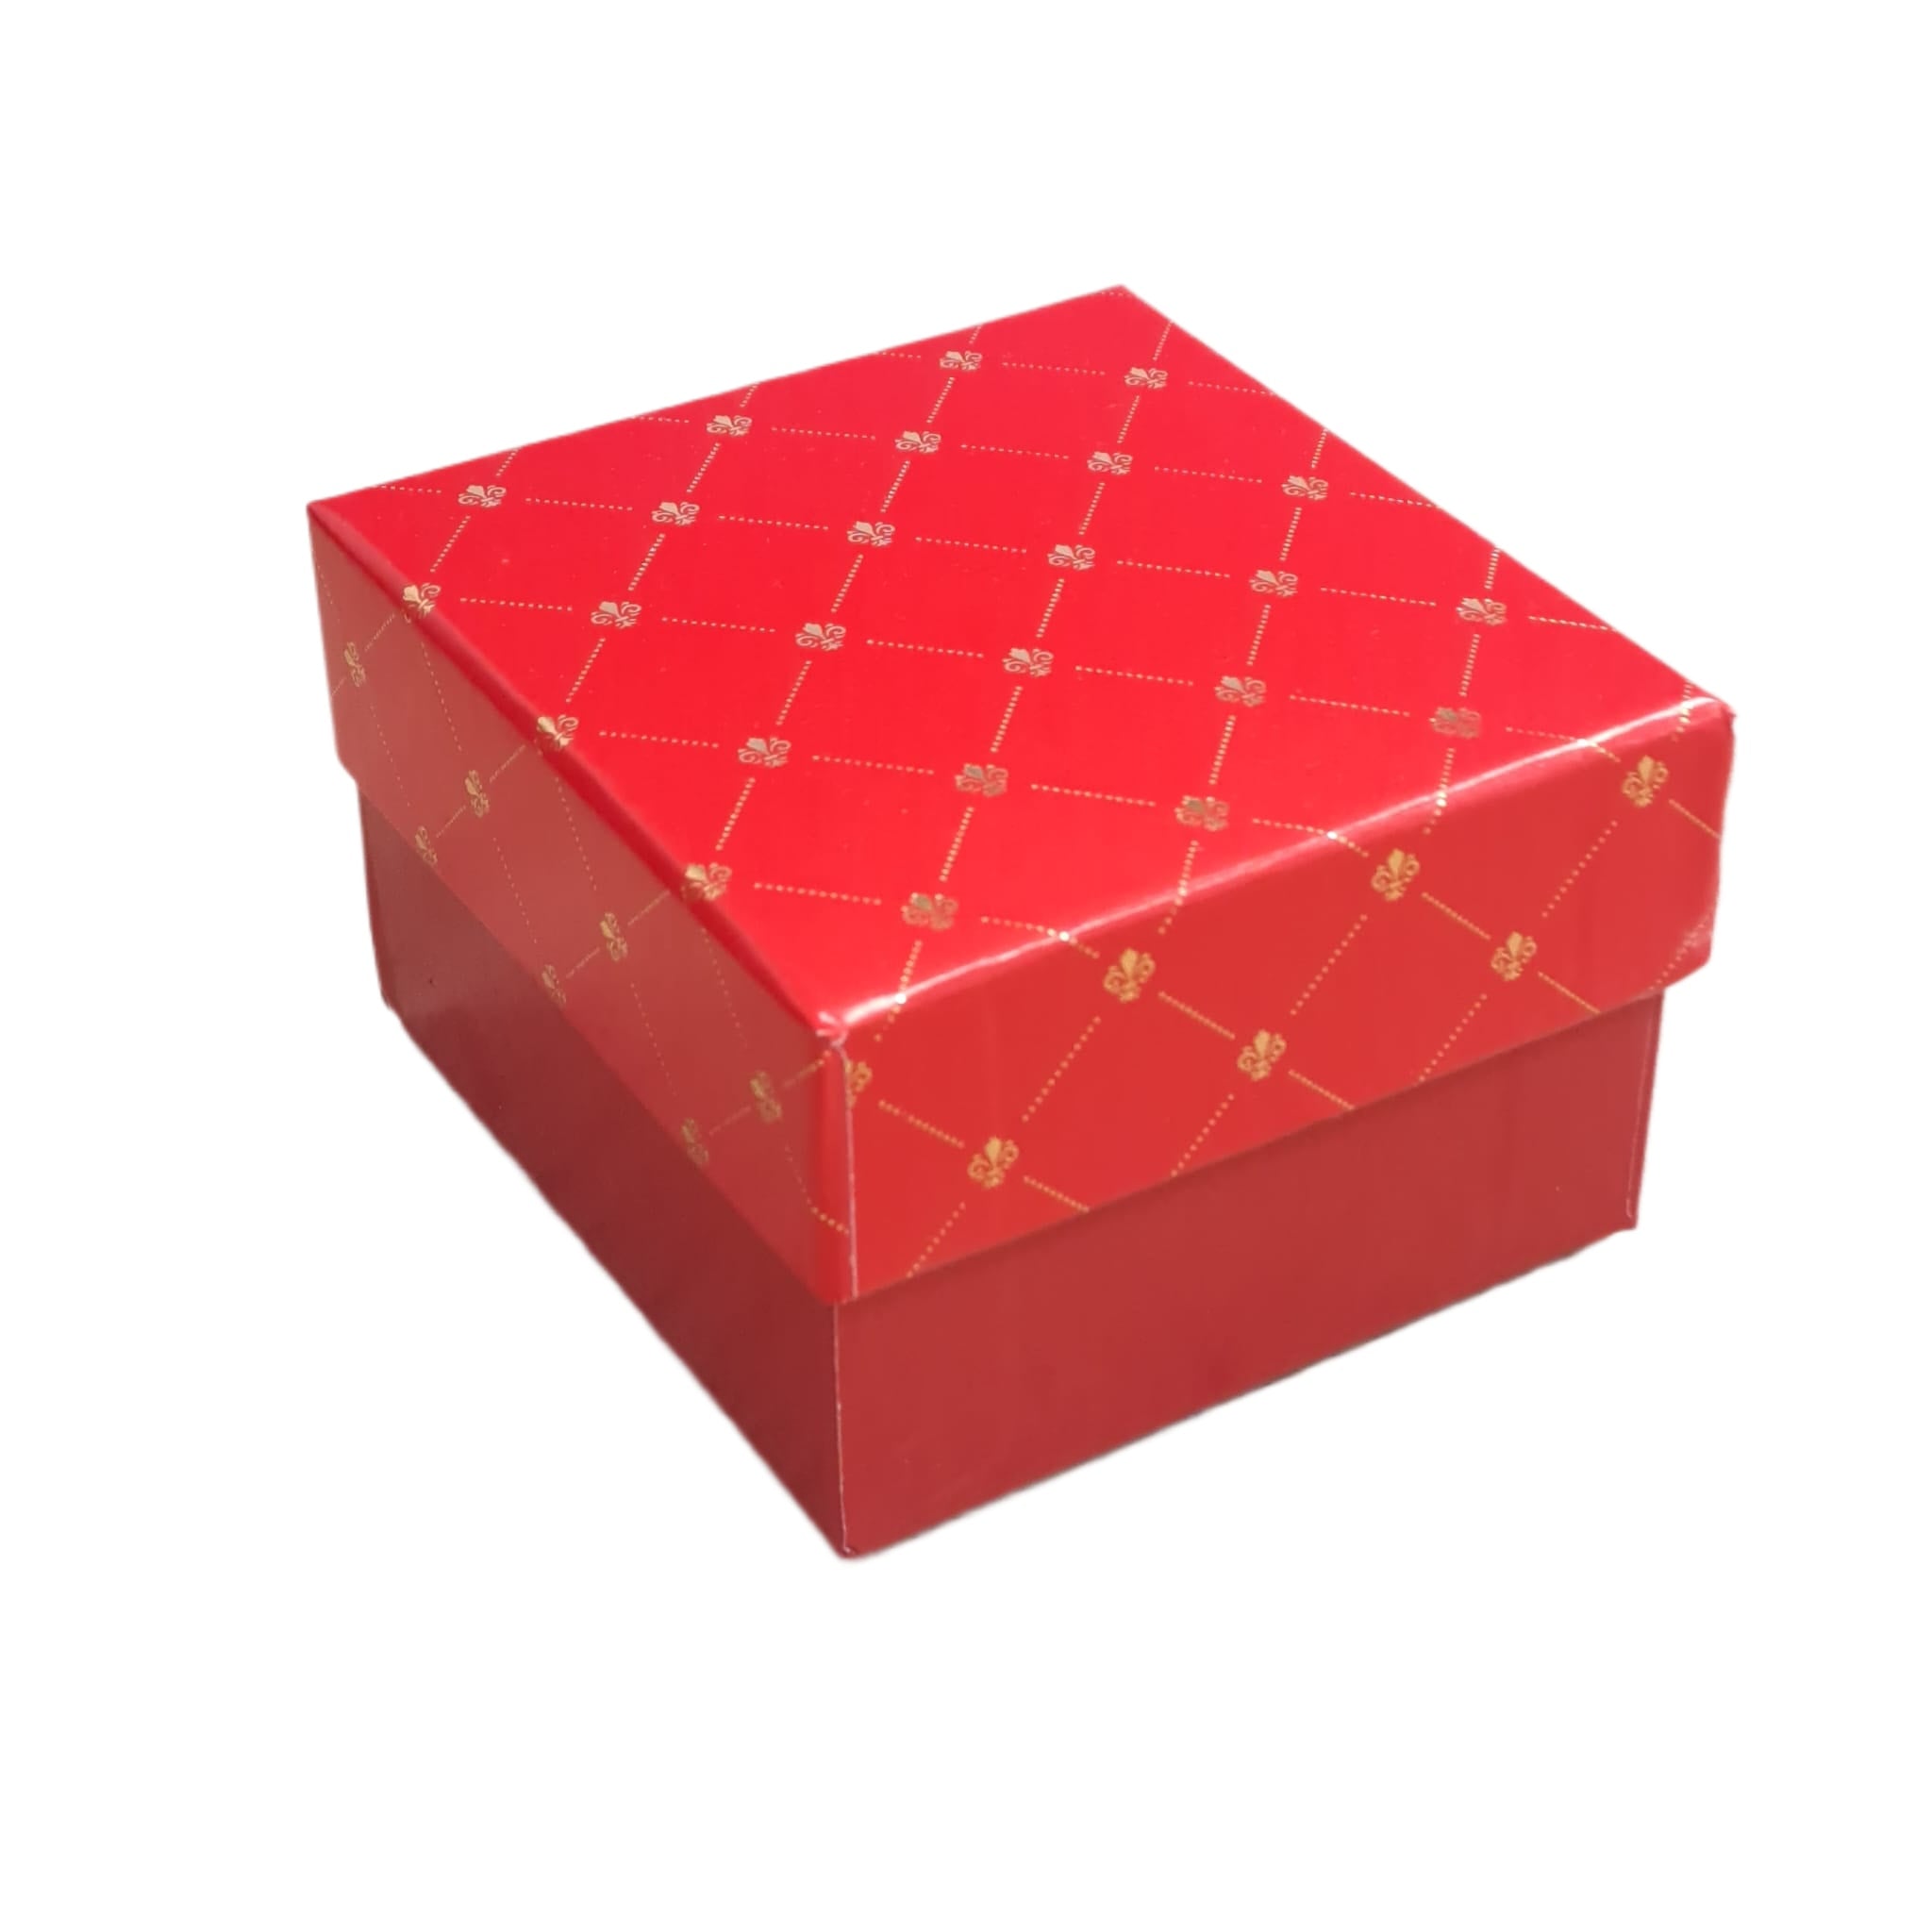 Cutie pentru cadou, rosie, cu burete si capac, 5.5x8x8.5cm